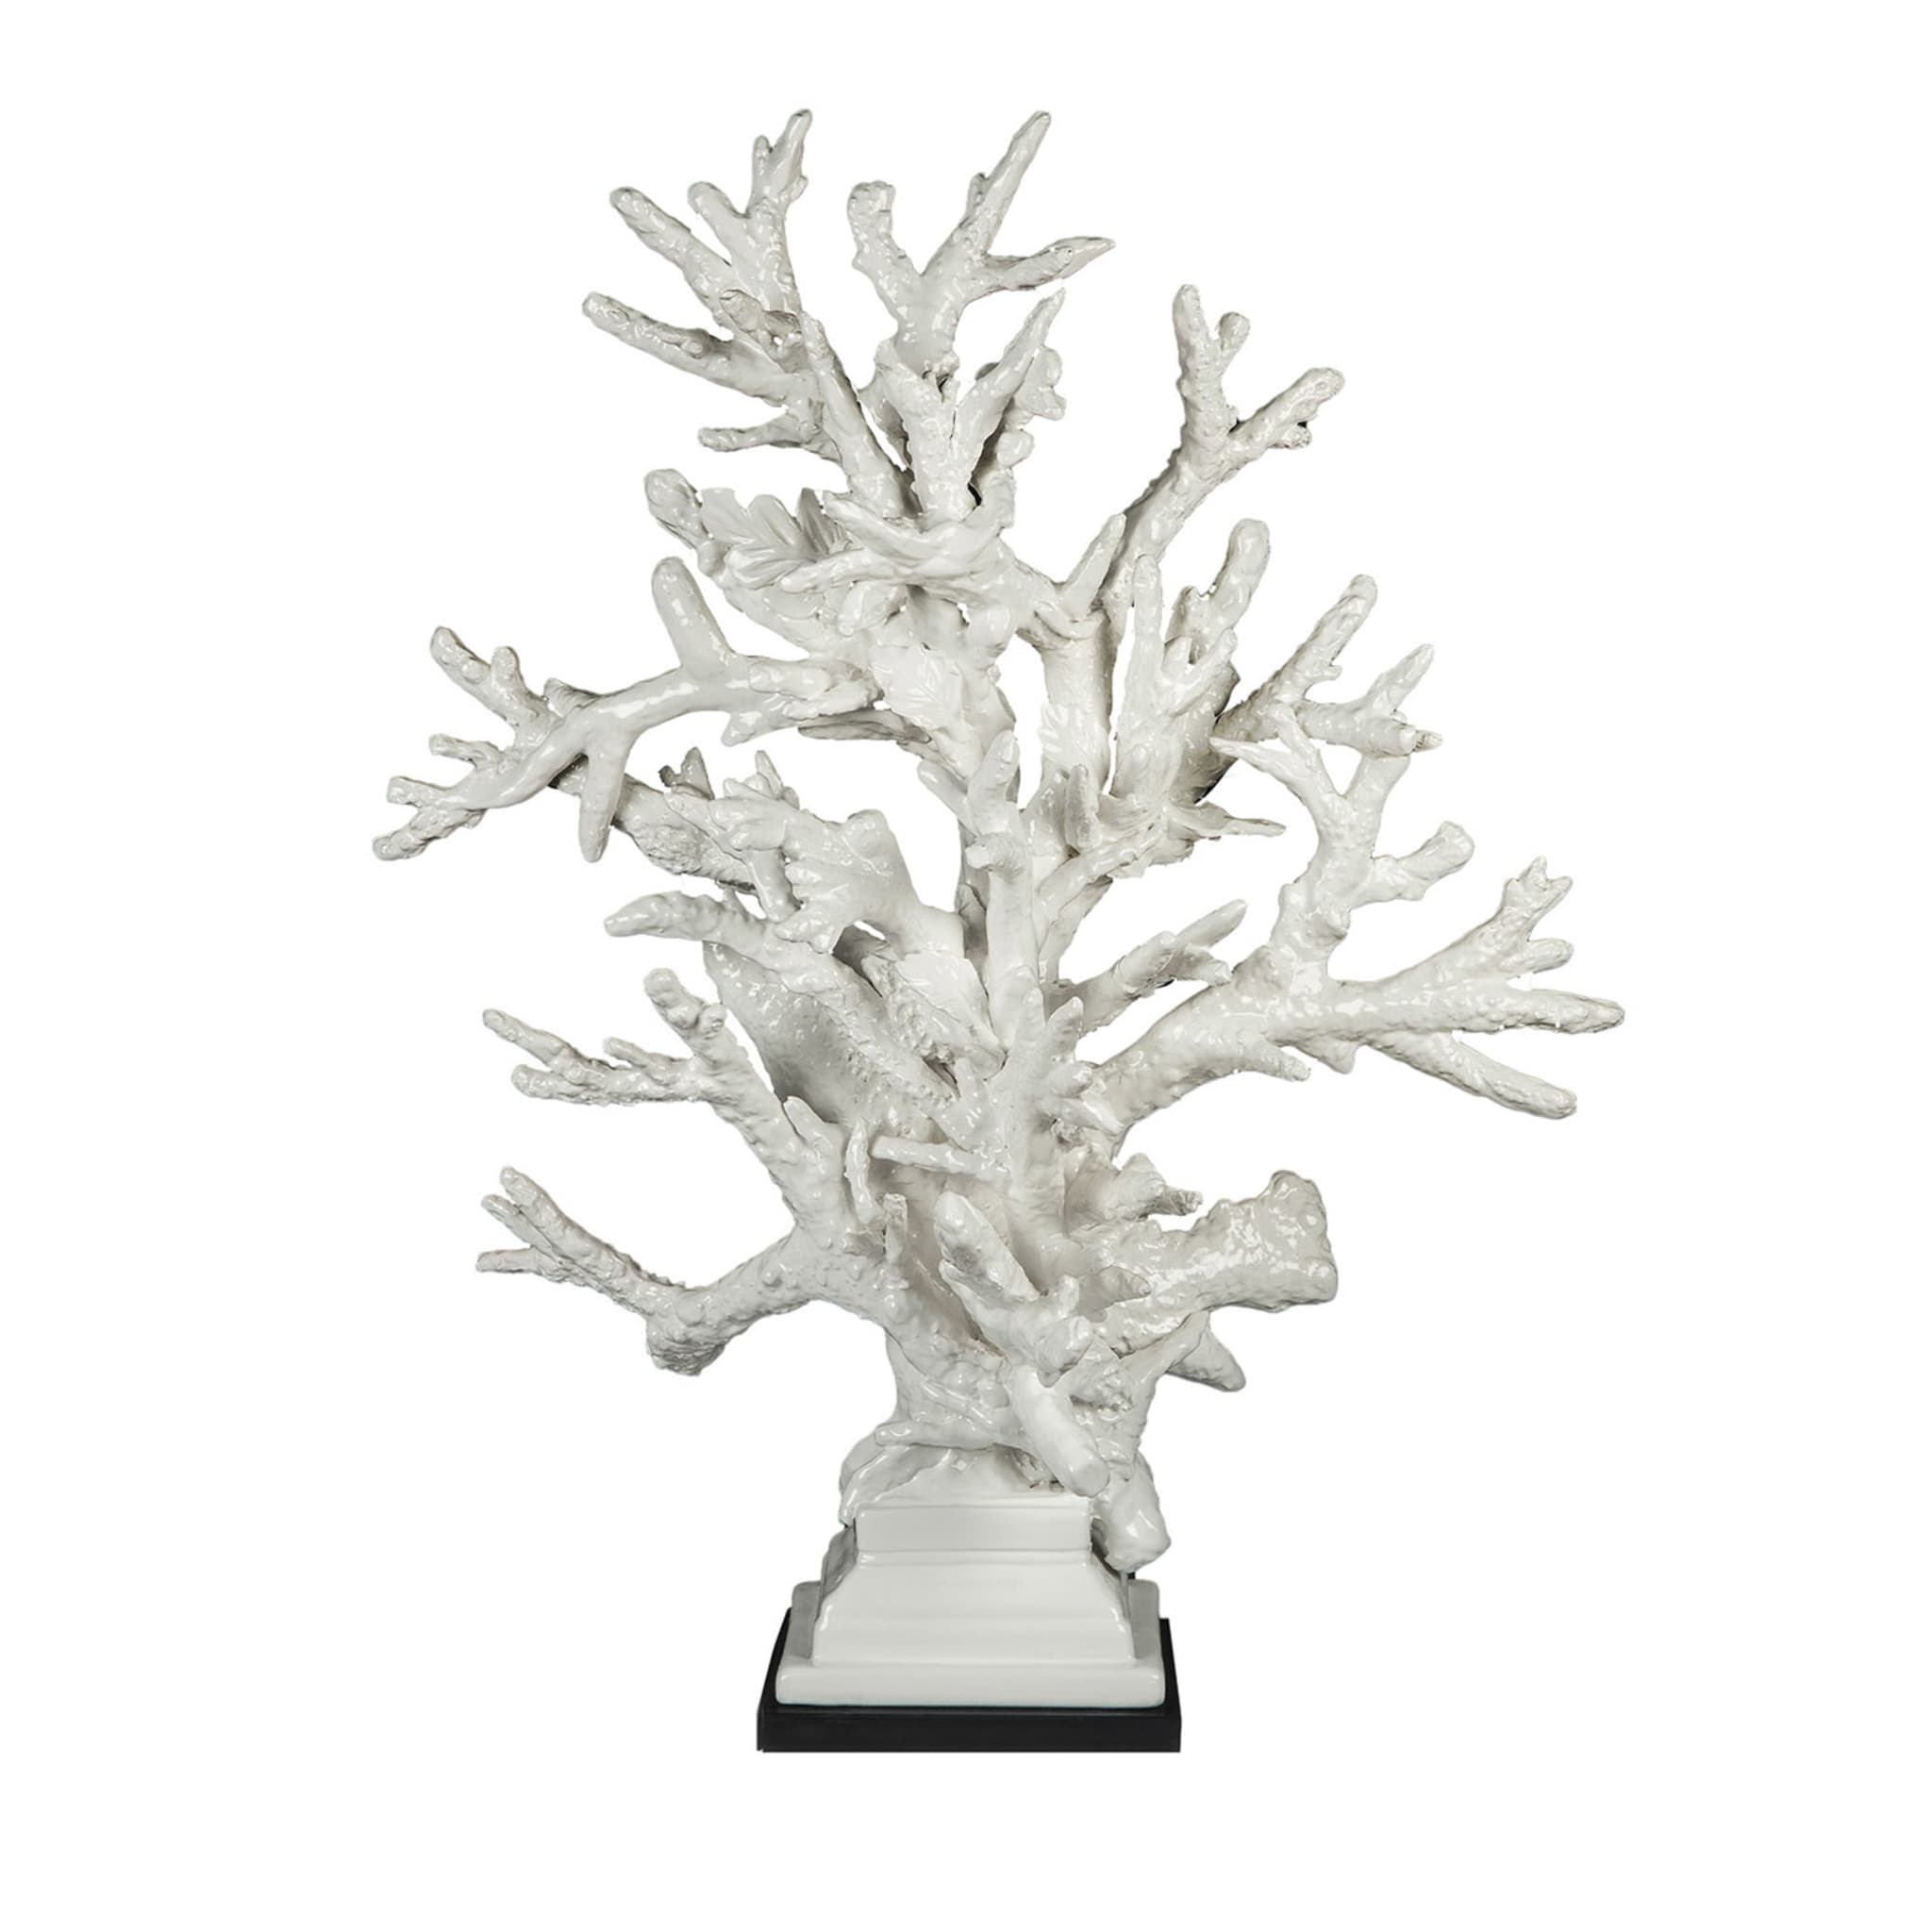 Weiße Coralli-Skulptur von Antonio Fullin - Hauptansicht